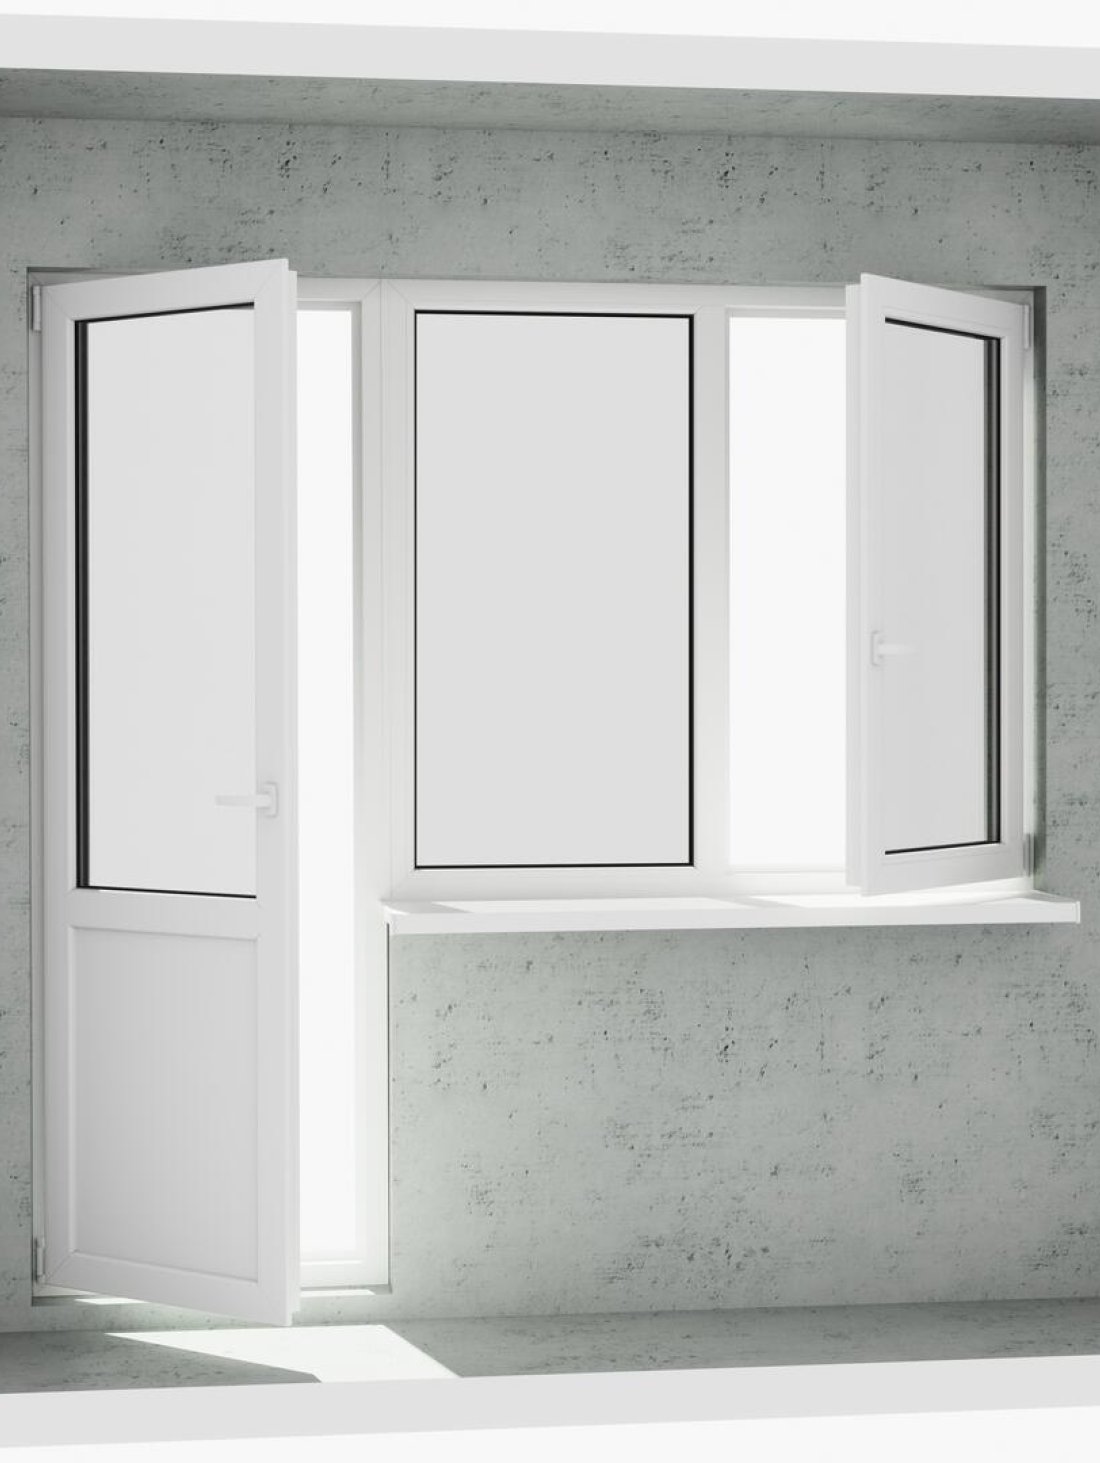 Вихід на лоджію (балкон): бюджетний класичний білий металопластиковий балконний блок (двері без режиму провітрювання, відкривається 1 половинка вікна) - Купити